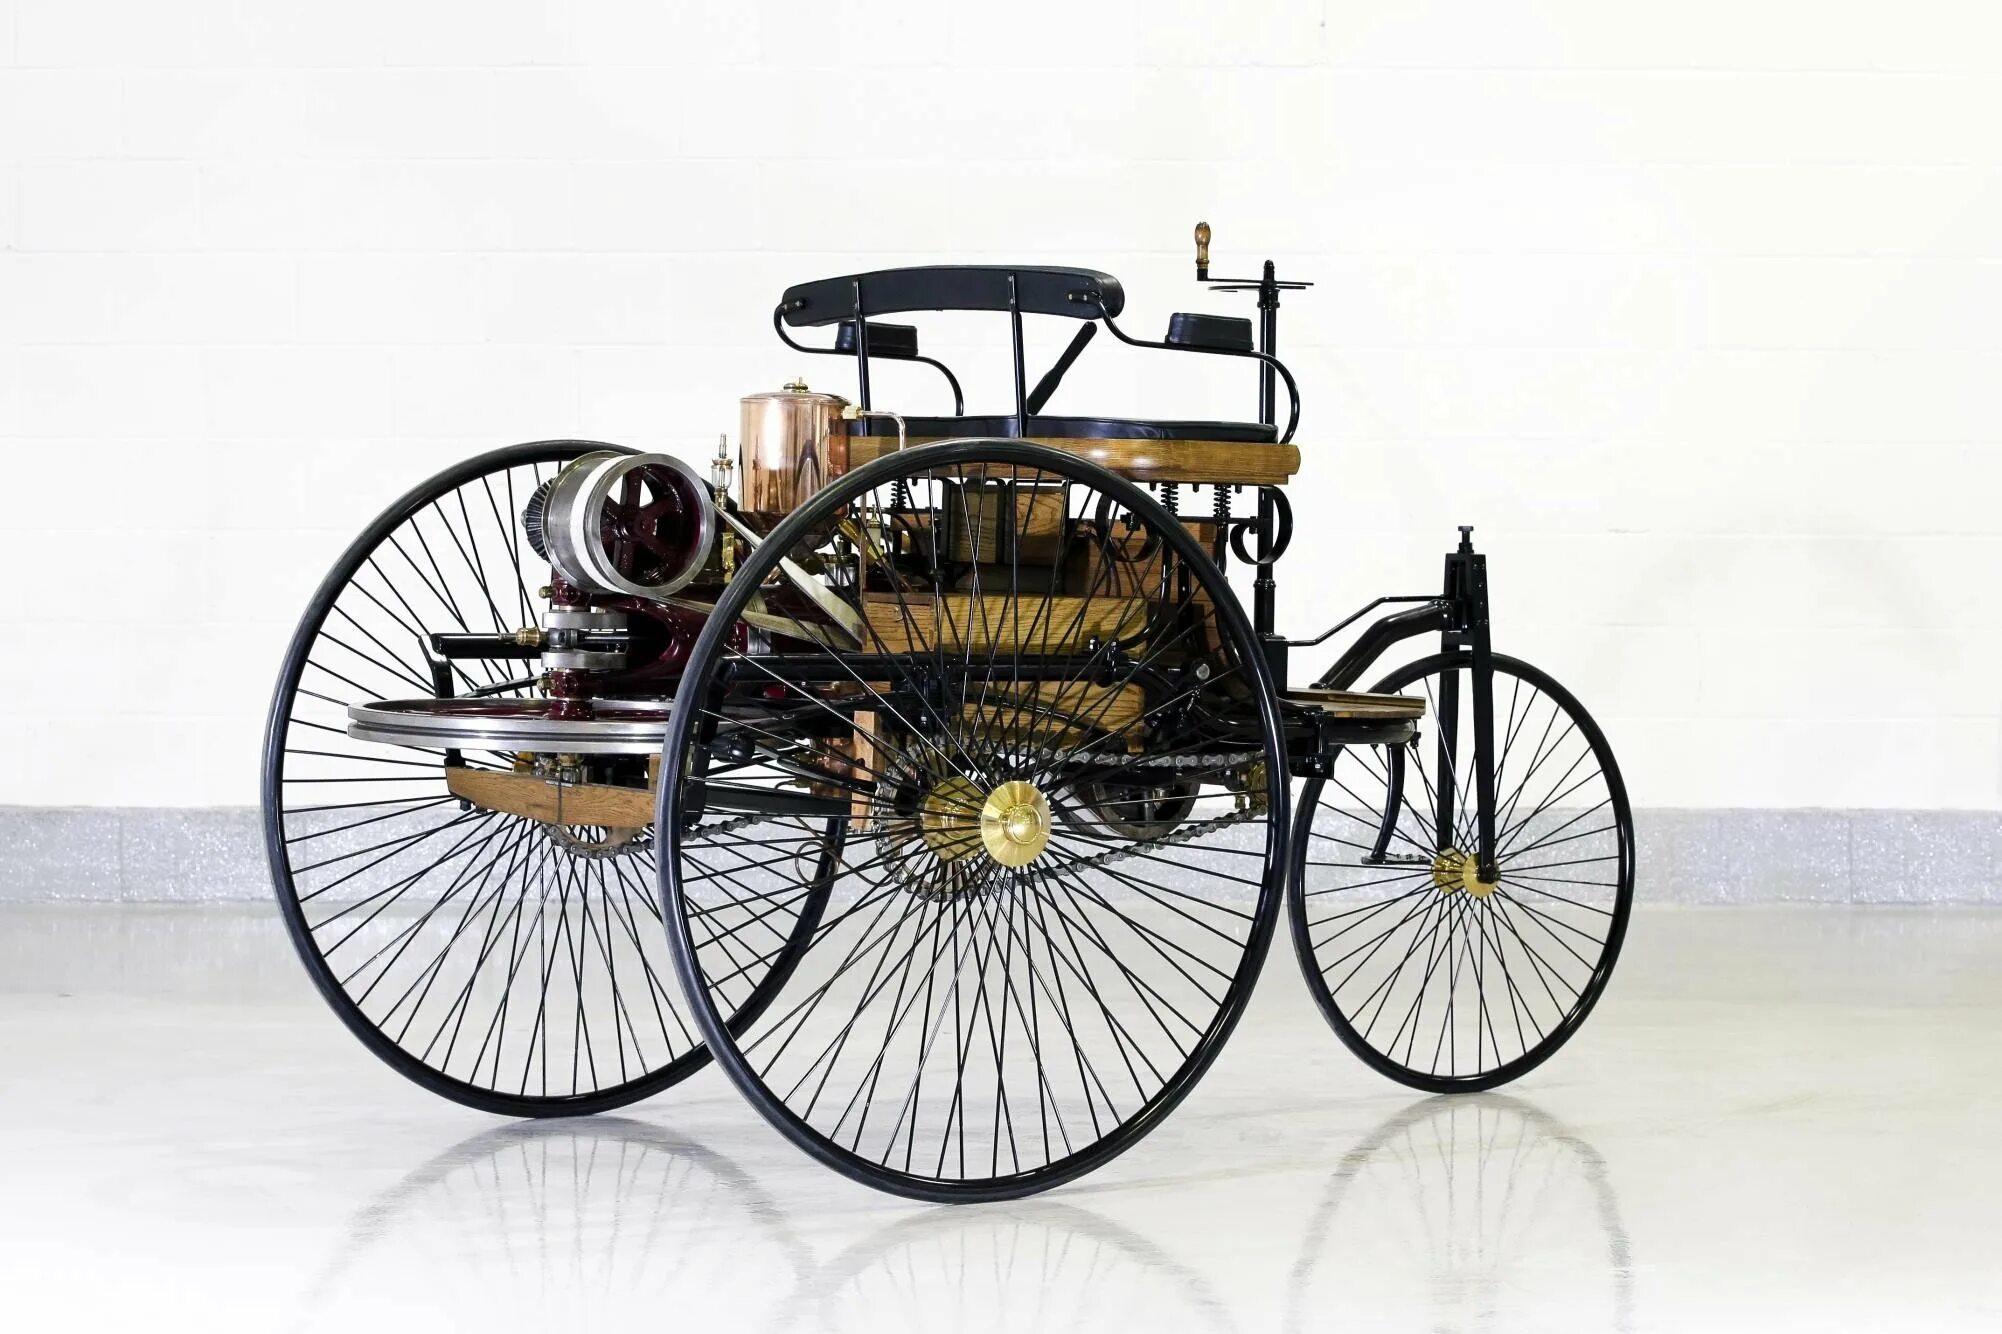 Первый автомобиль внутреннего. Benz Patent-Motorwagen 1886. Benz Patent-Motorwagen 1886 двигатель.